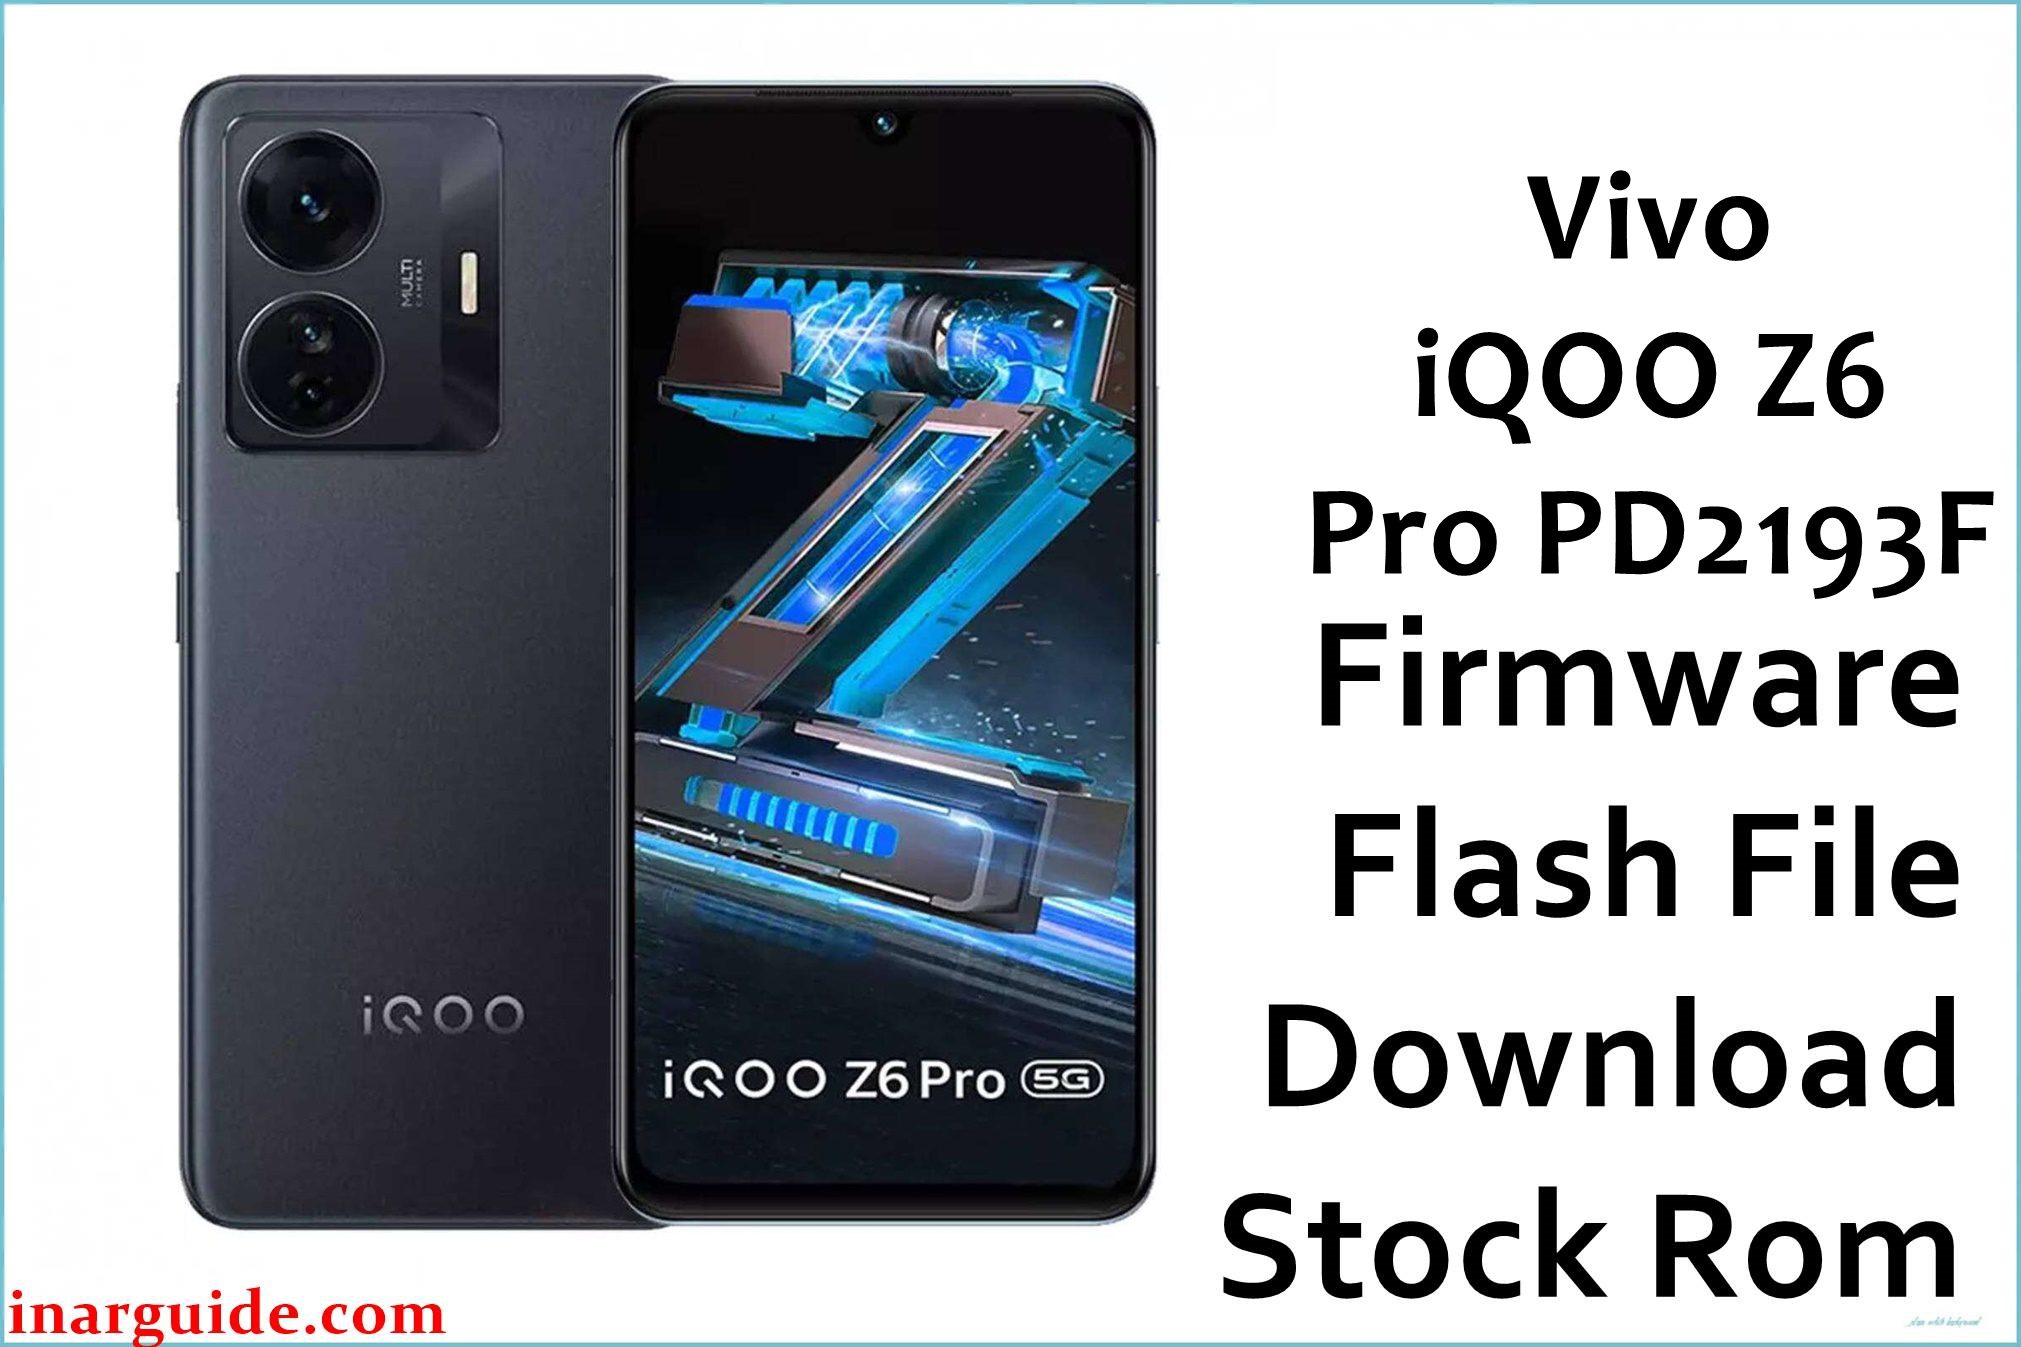 Vivo iQOO Z6 Pro PD2193F